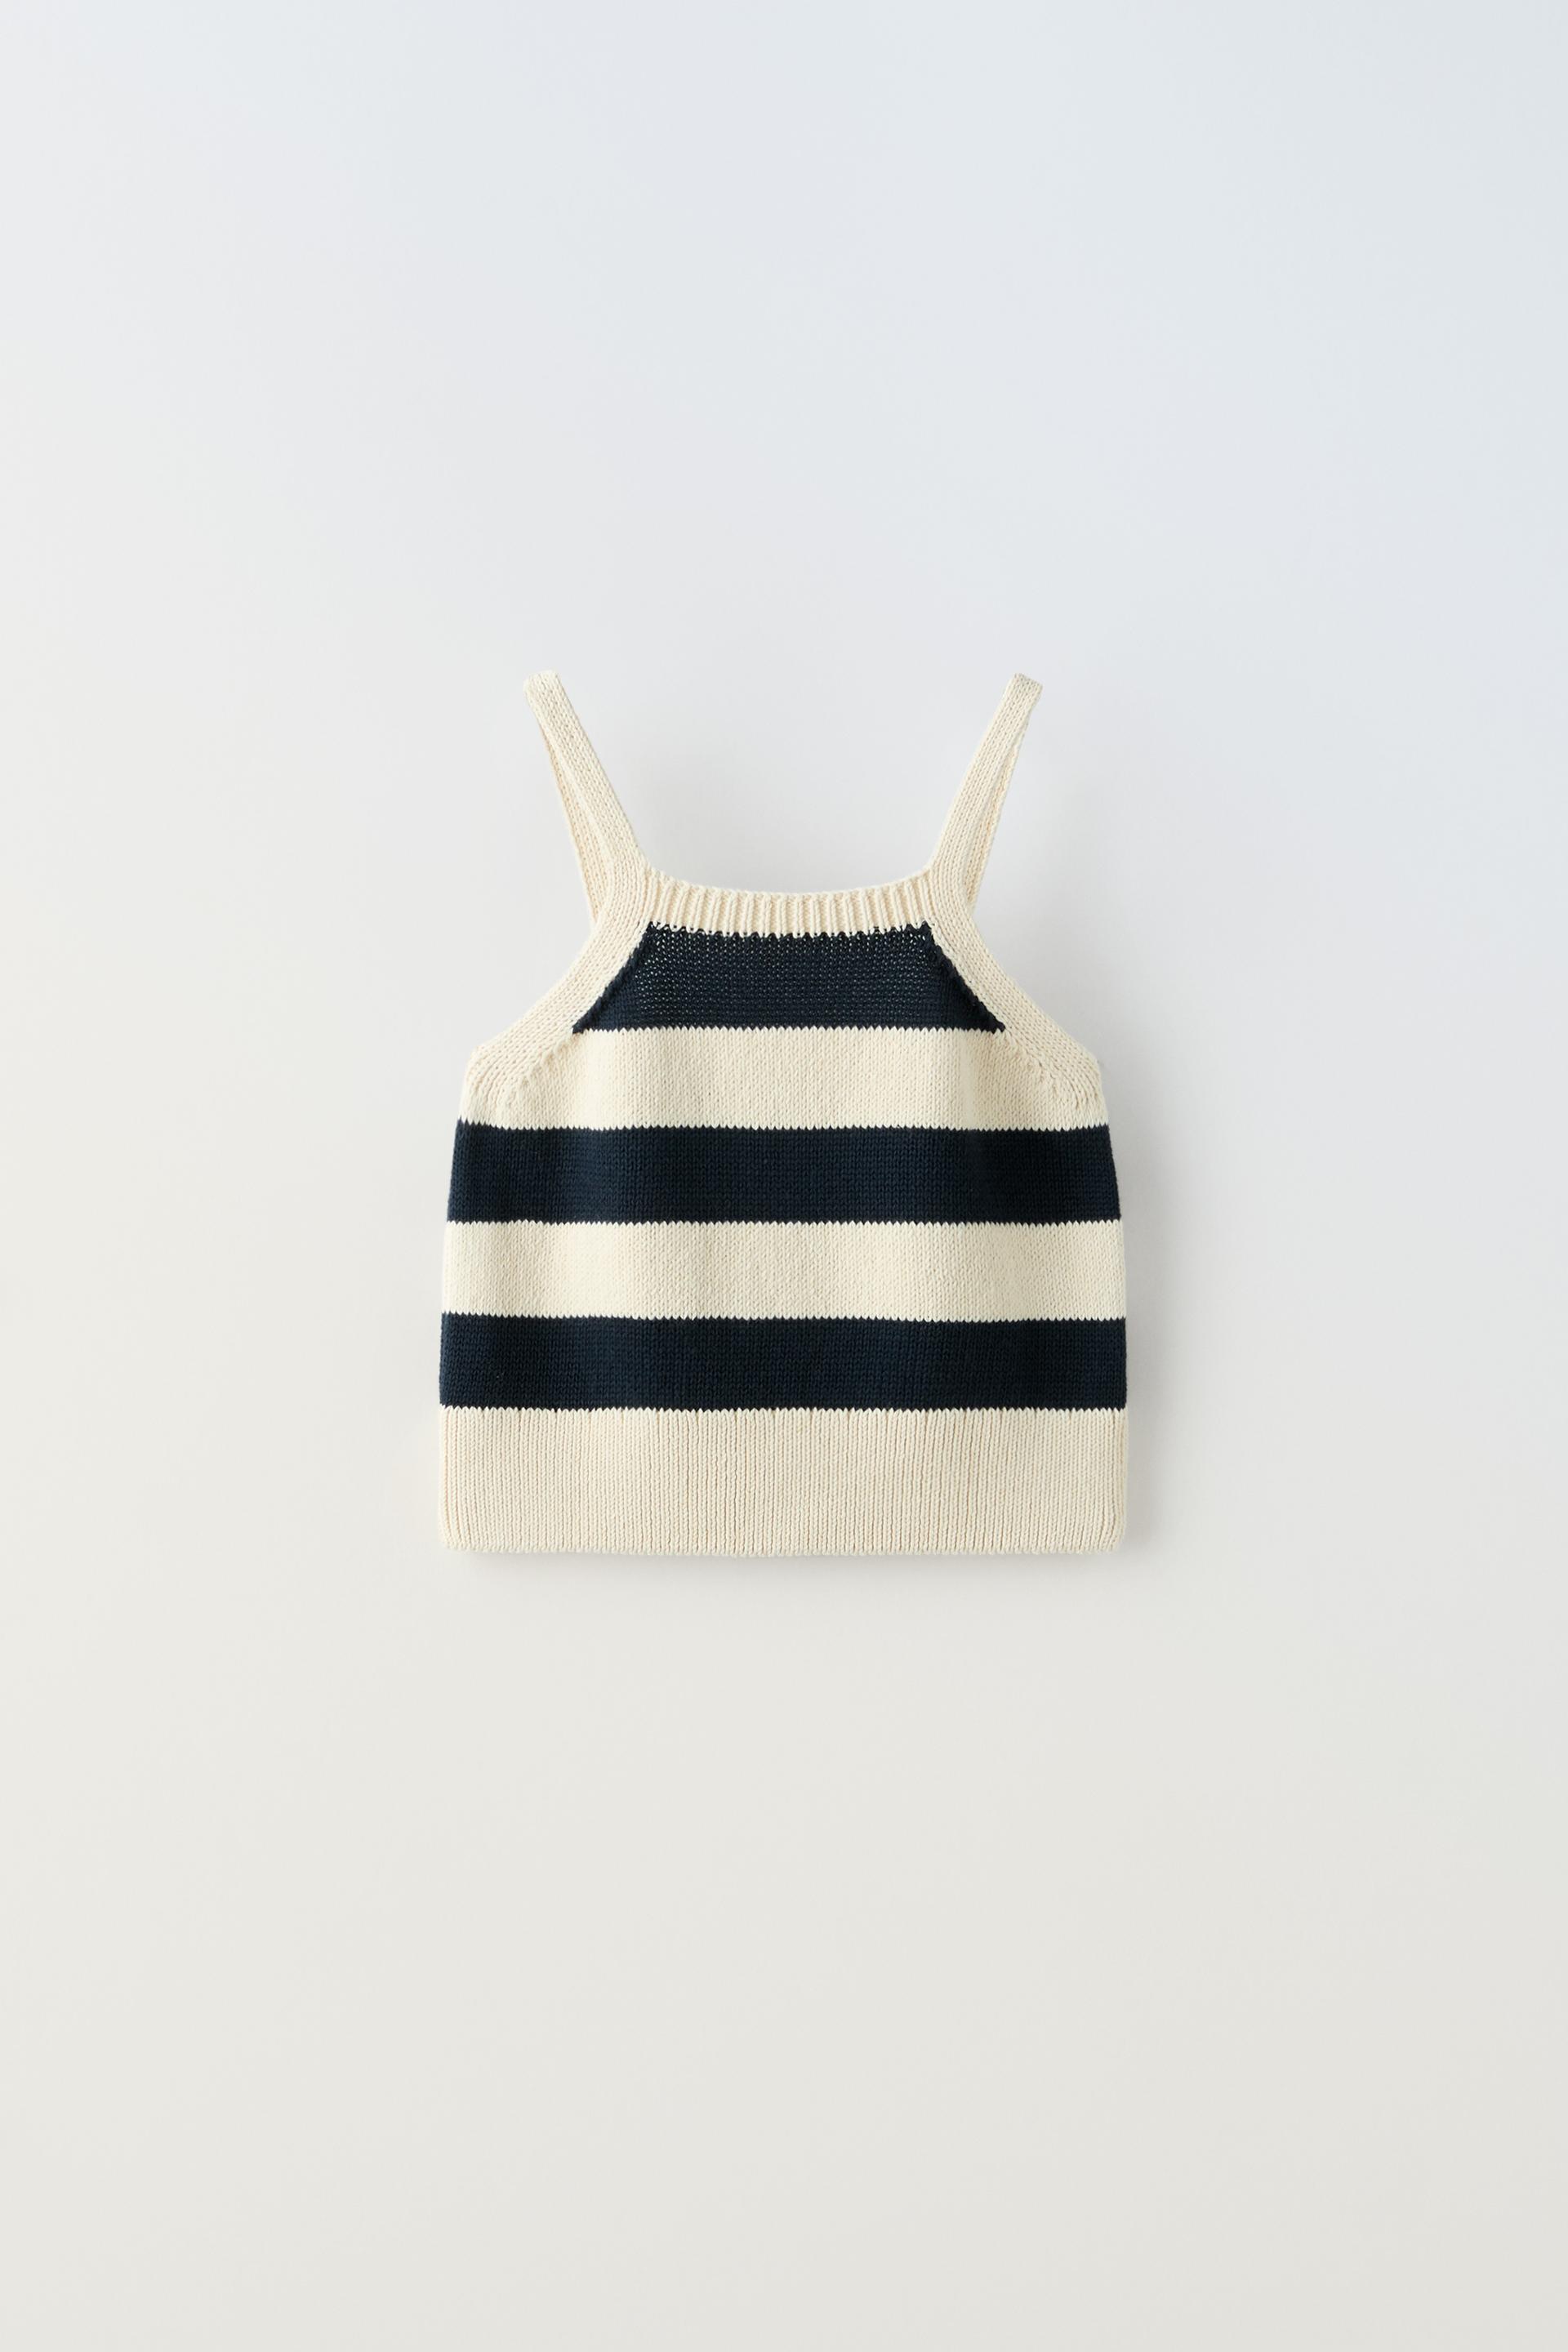 Топ Zara Striped Knit, светло-бежевый топ zara floral knit бежевый